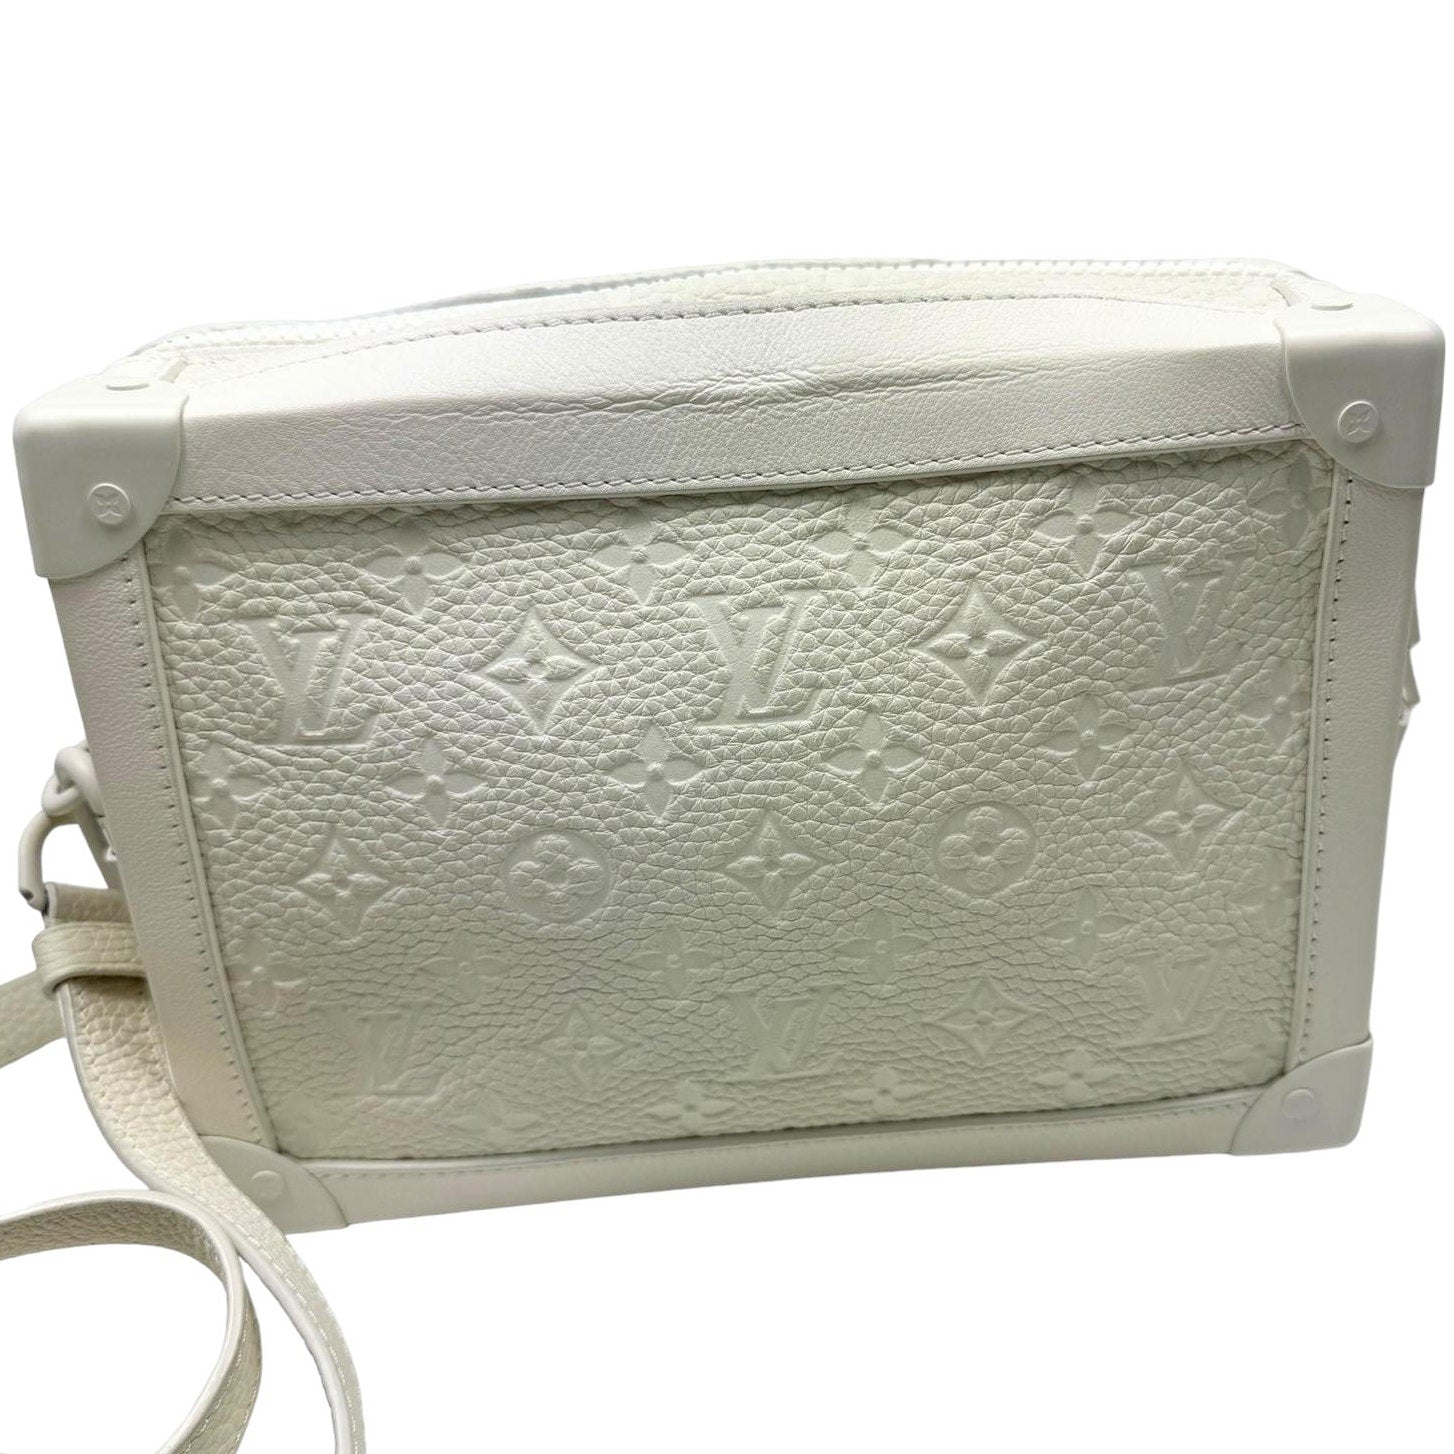 Authentic LOUIS VUITTON Soft Trunk Shoulder Bag White Taurillon leather